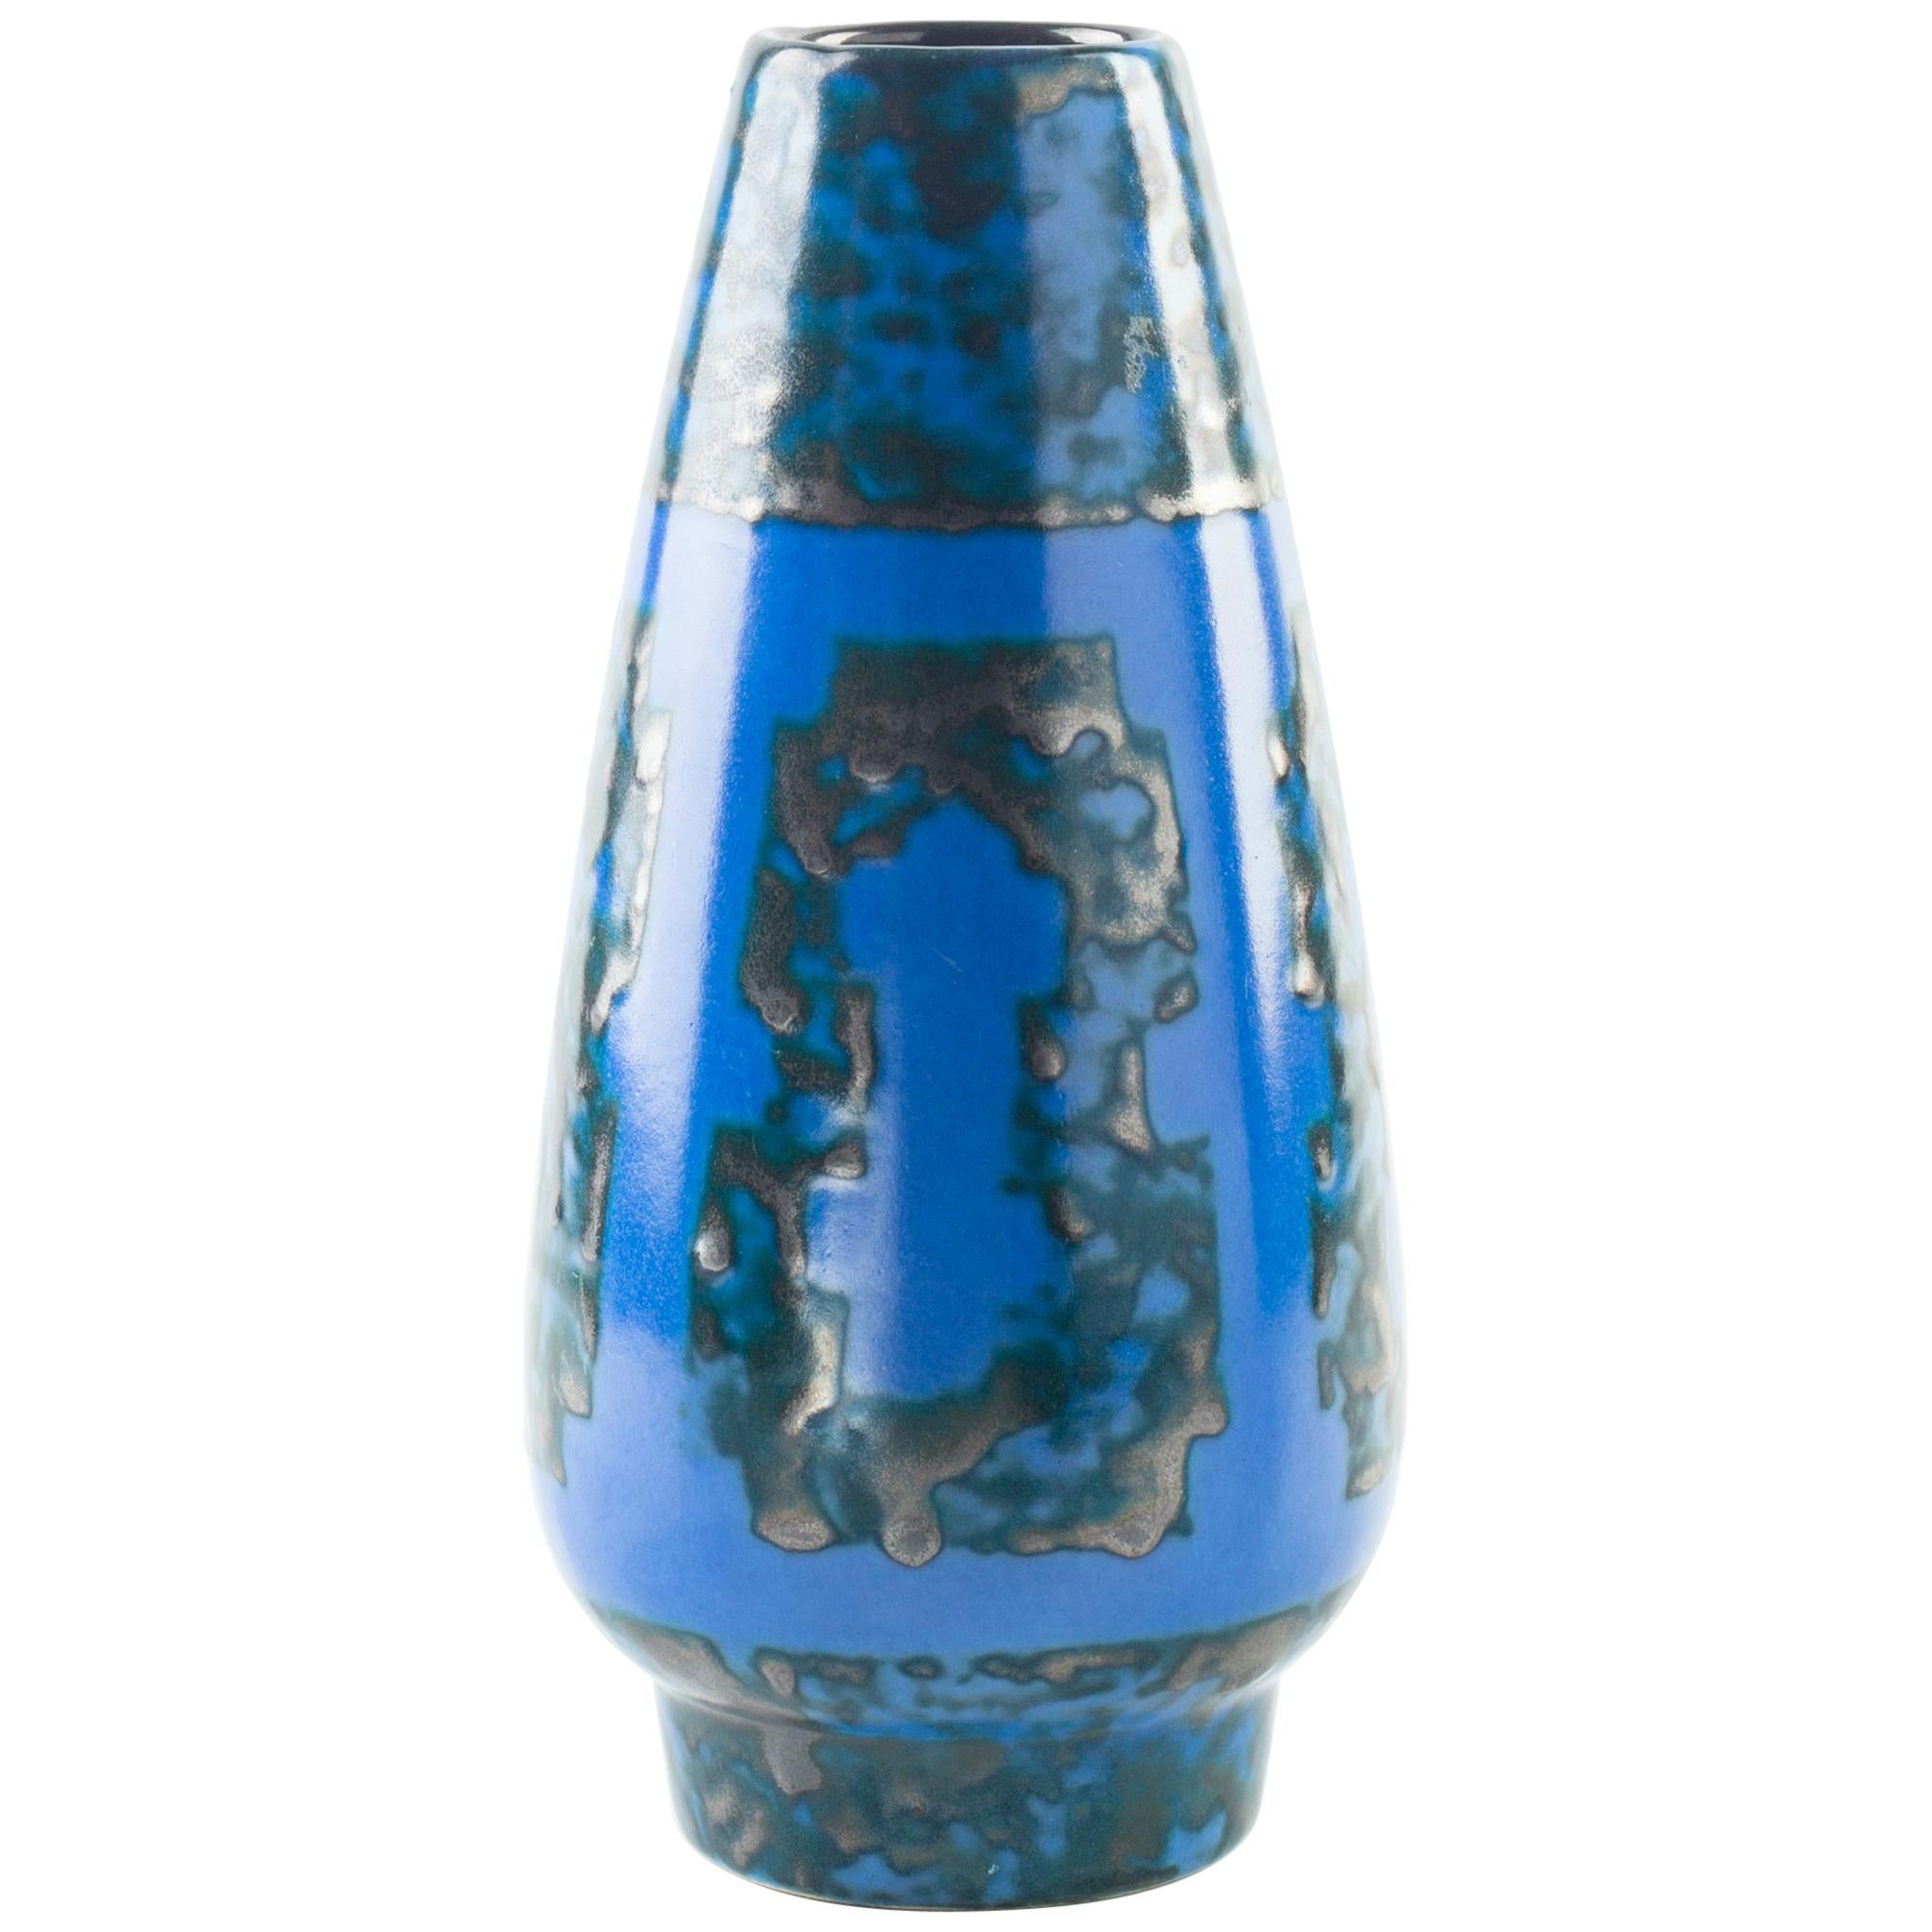 Vintage Strehla Blue Vase, Germany, Mid-20th Century